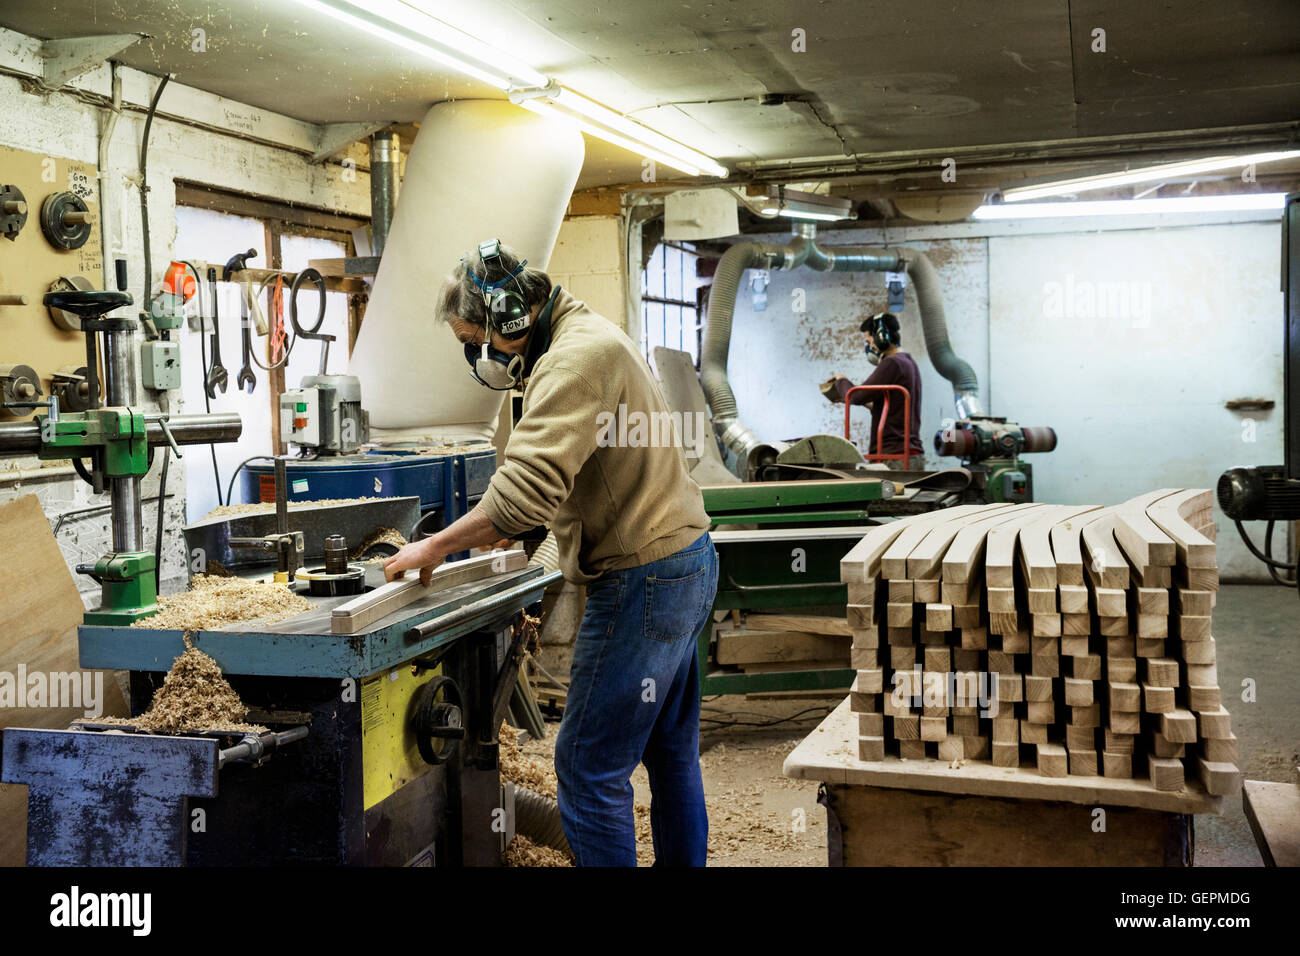 Homme debout dans un atelier de menuiserie, un respirateur et protecteur auditif, de travailler sur un morceau de bois. Banque D'Images